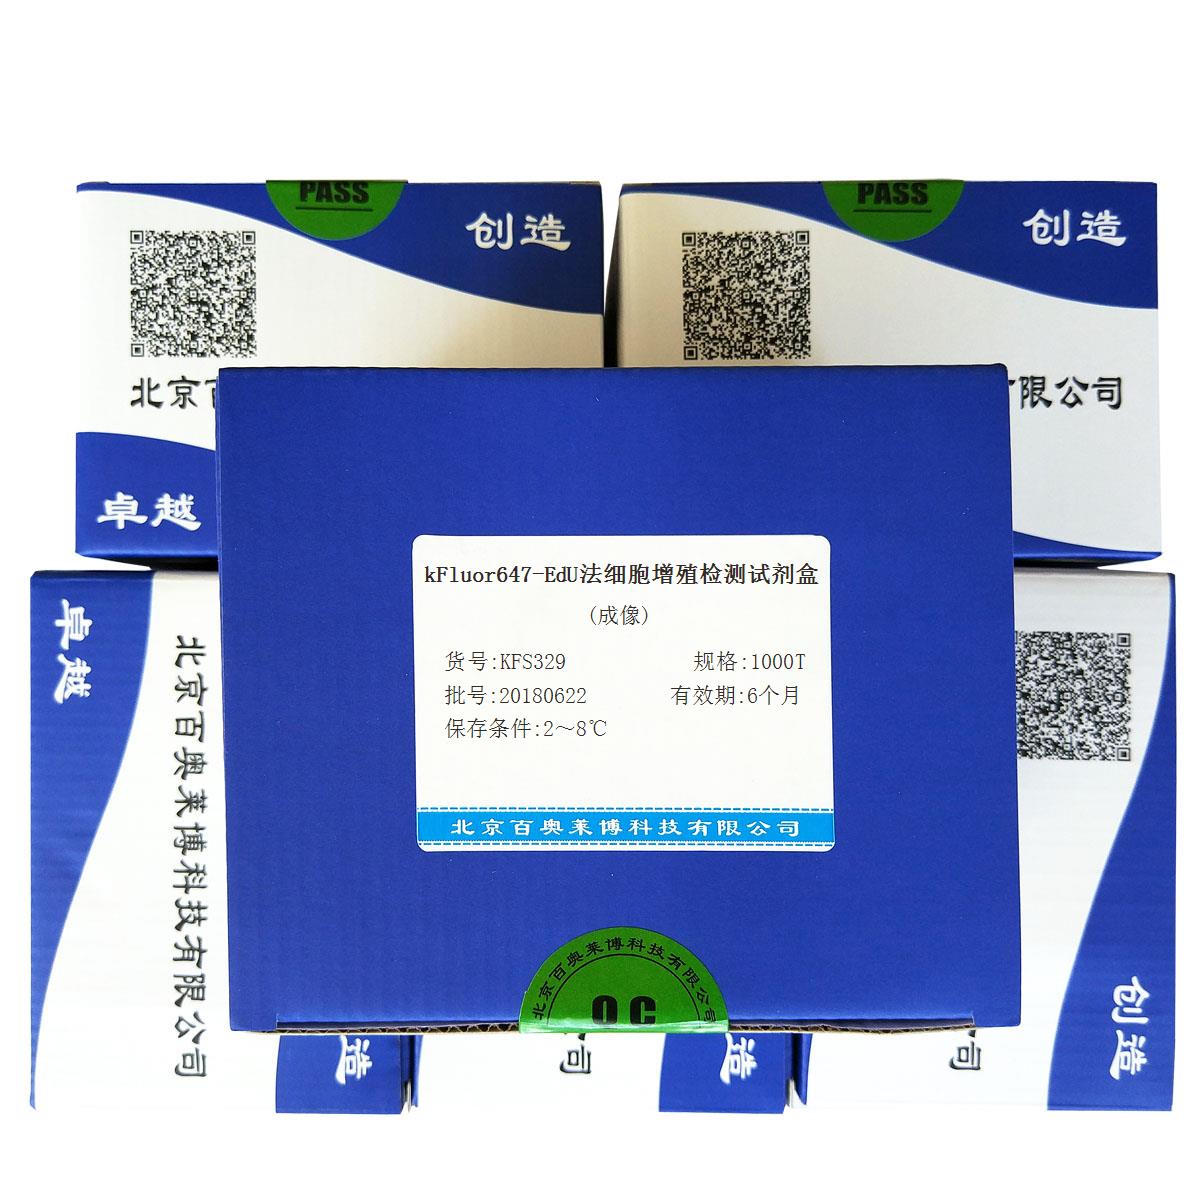 北京kFluor647-EdU法细胞增殖检测试剂盒(成像)价格厂家